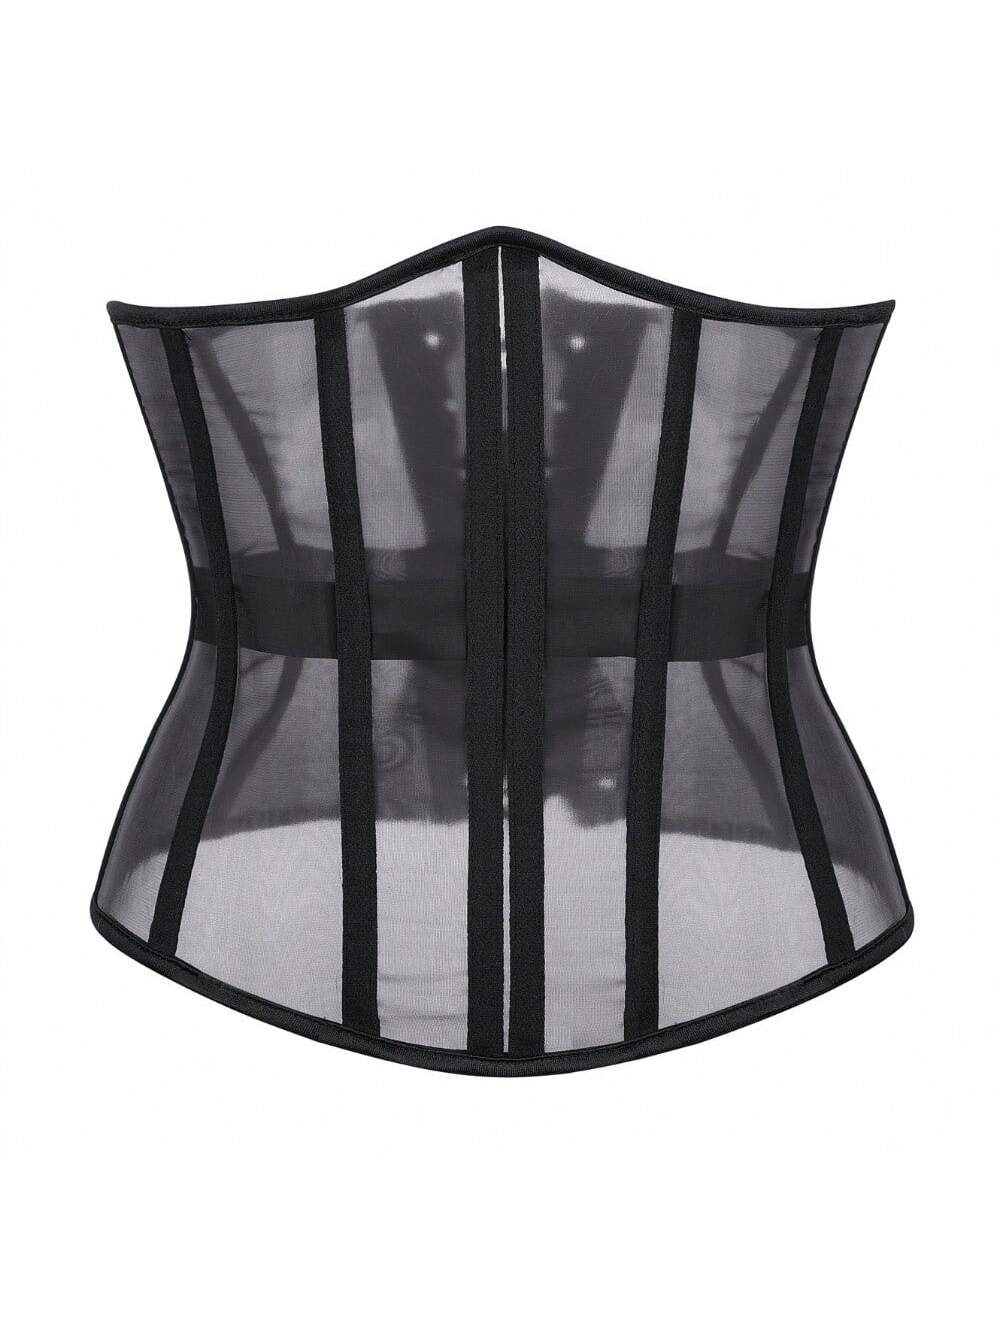 1шт женский прозрачный сетчатый корсетный пояс с регулируемыми завязками на спине, черный